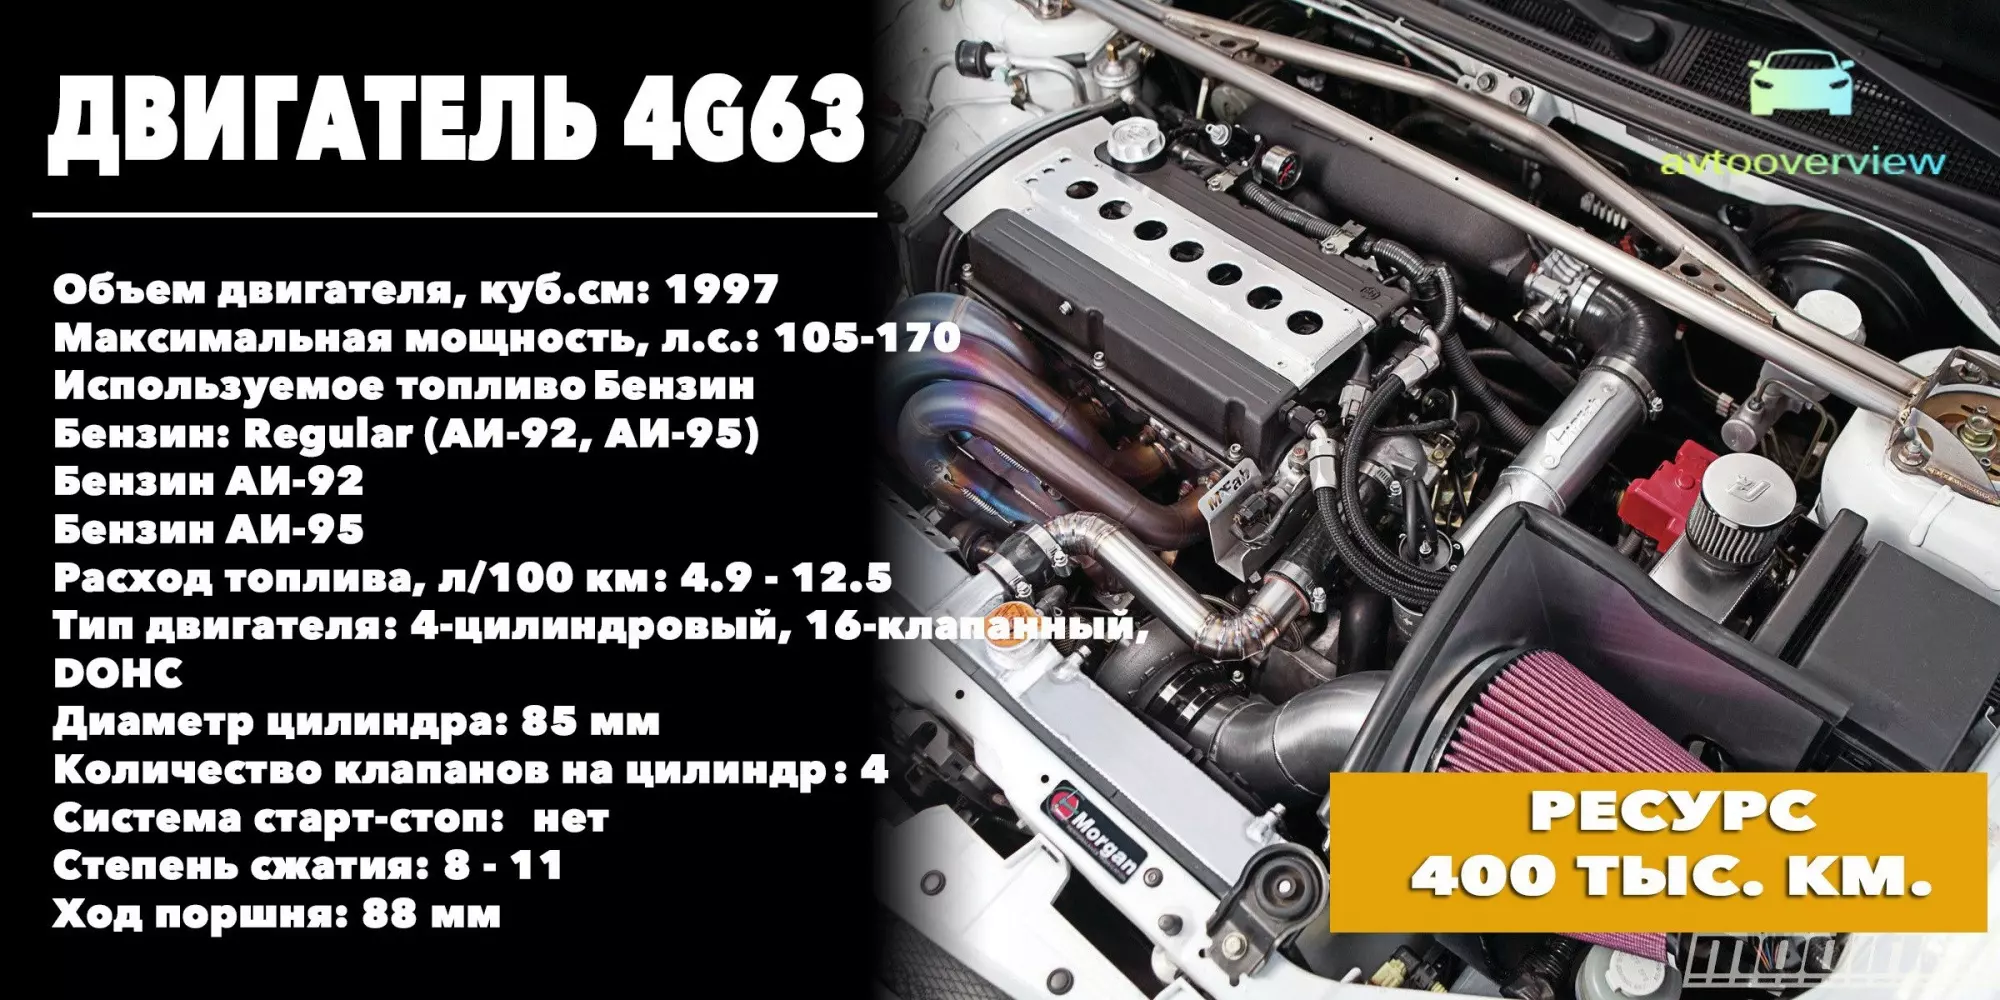 2,0-литровый 4G63: технические характеристики